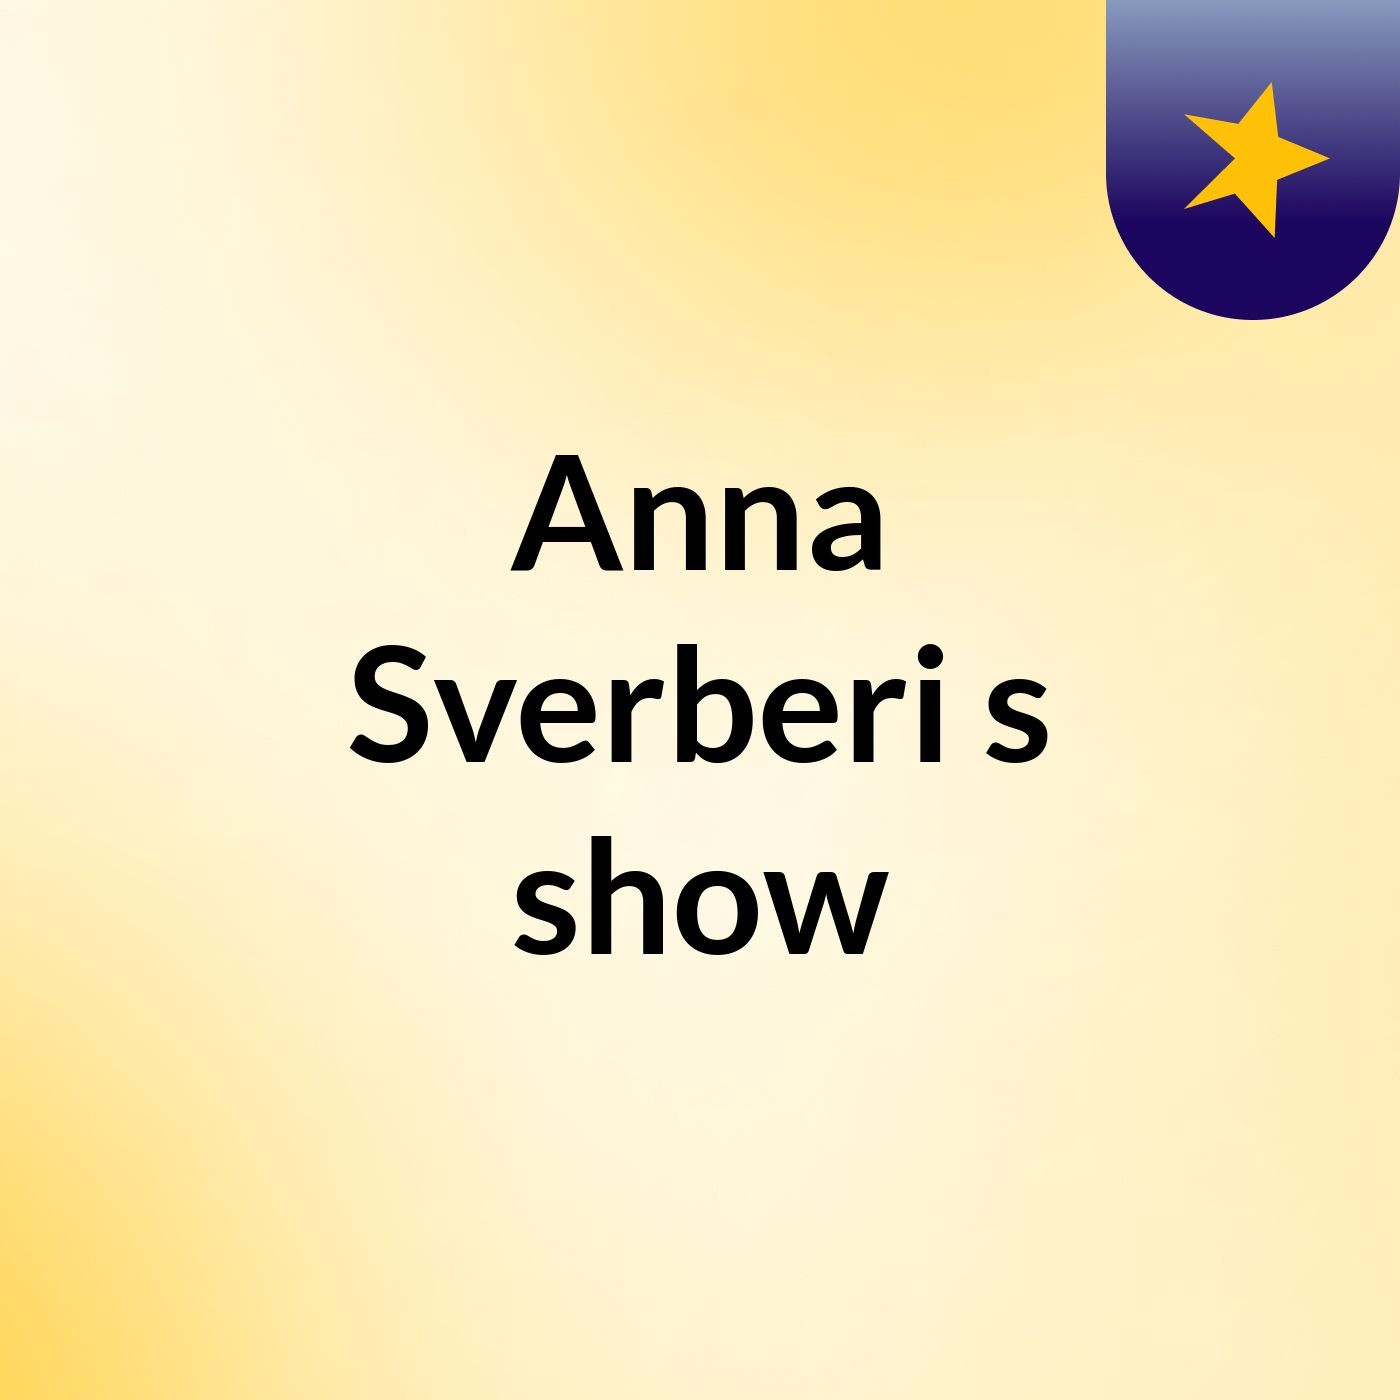 Anna Sverberi's show